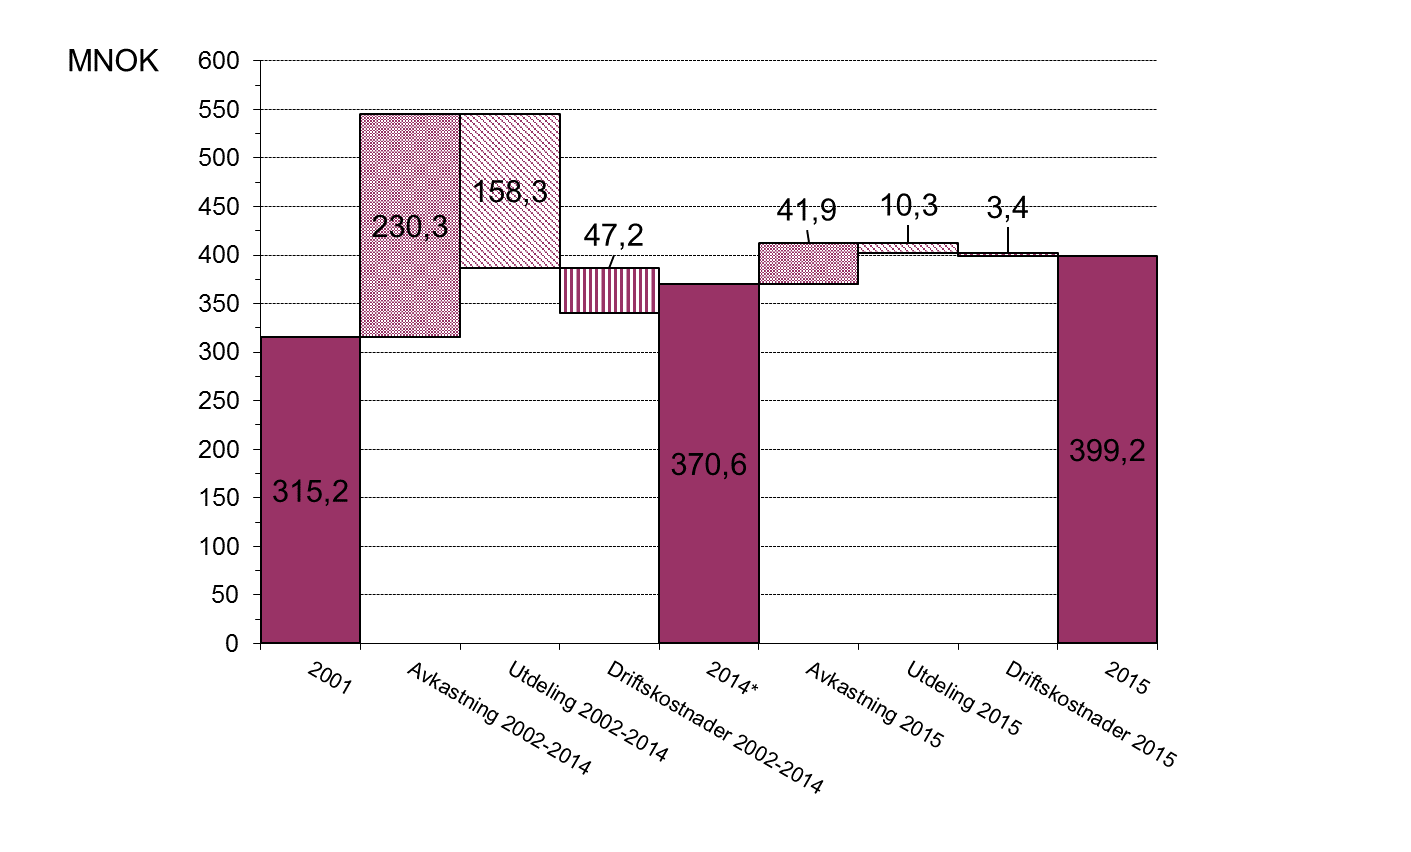 F. Porteføljens verdiutvikling siden 2002 Figuren nedenfor illustrerer porteføljens markedsverdi (per 31.12), avkastning, utdelinger og driftskostnader i perioden 2002-2014, samt 2015.